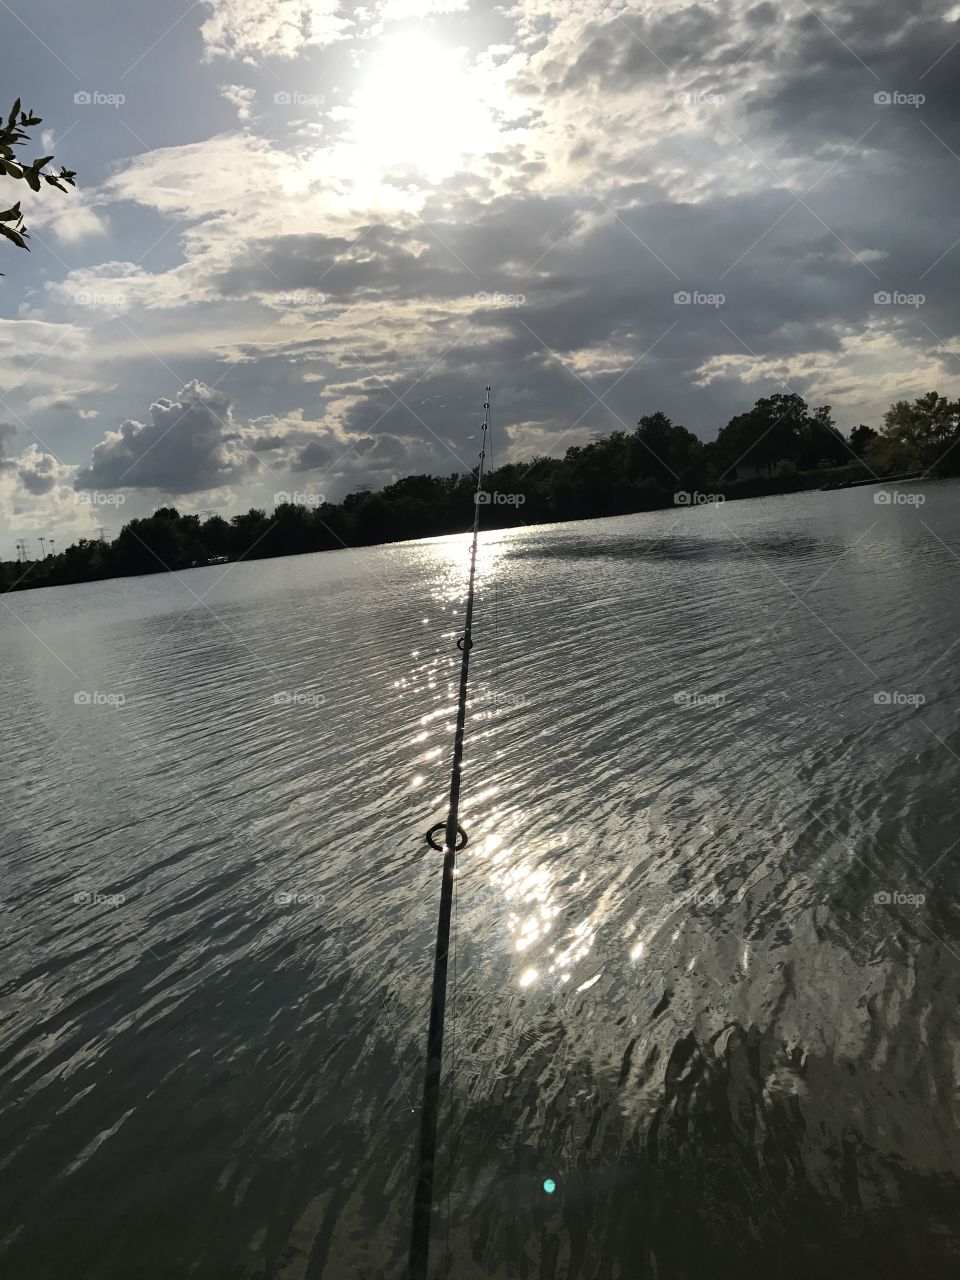 Fishing @ Buffalo Run Park in Missouri City, TX.... no bites but got a great tan 😂